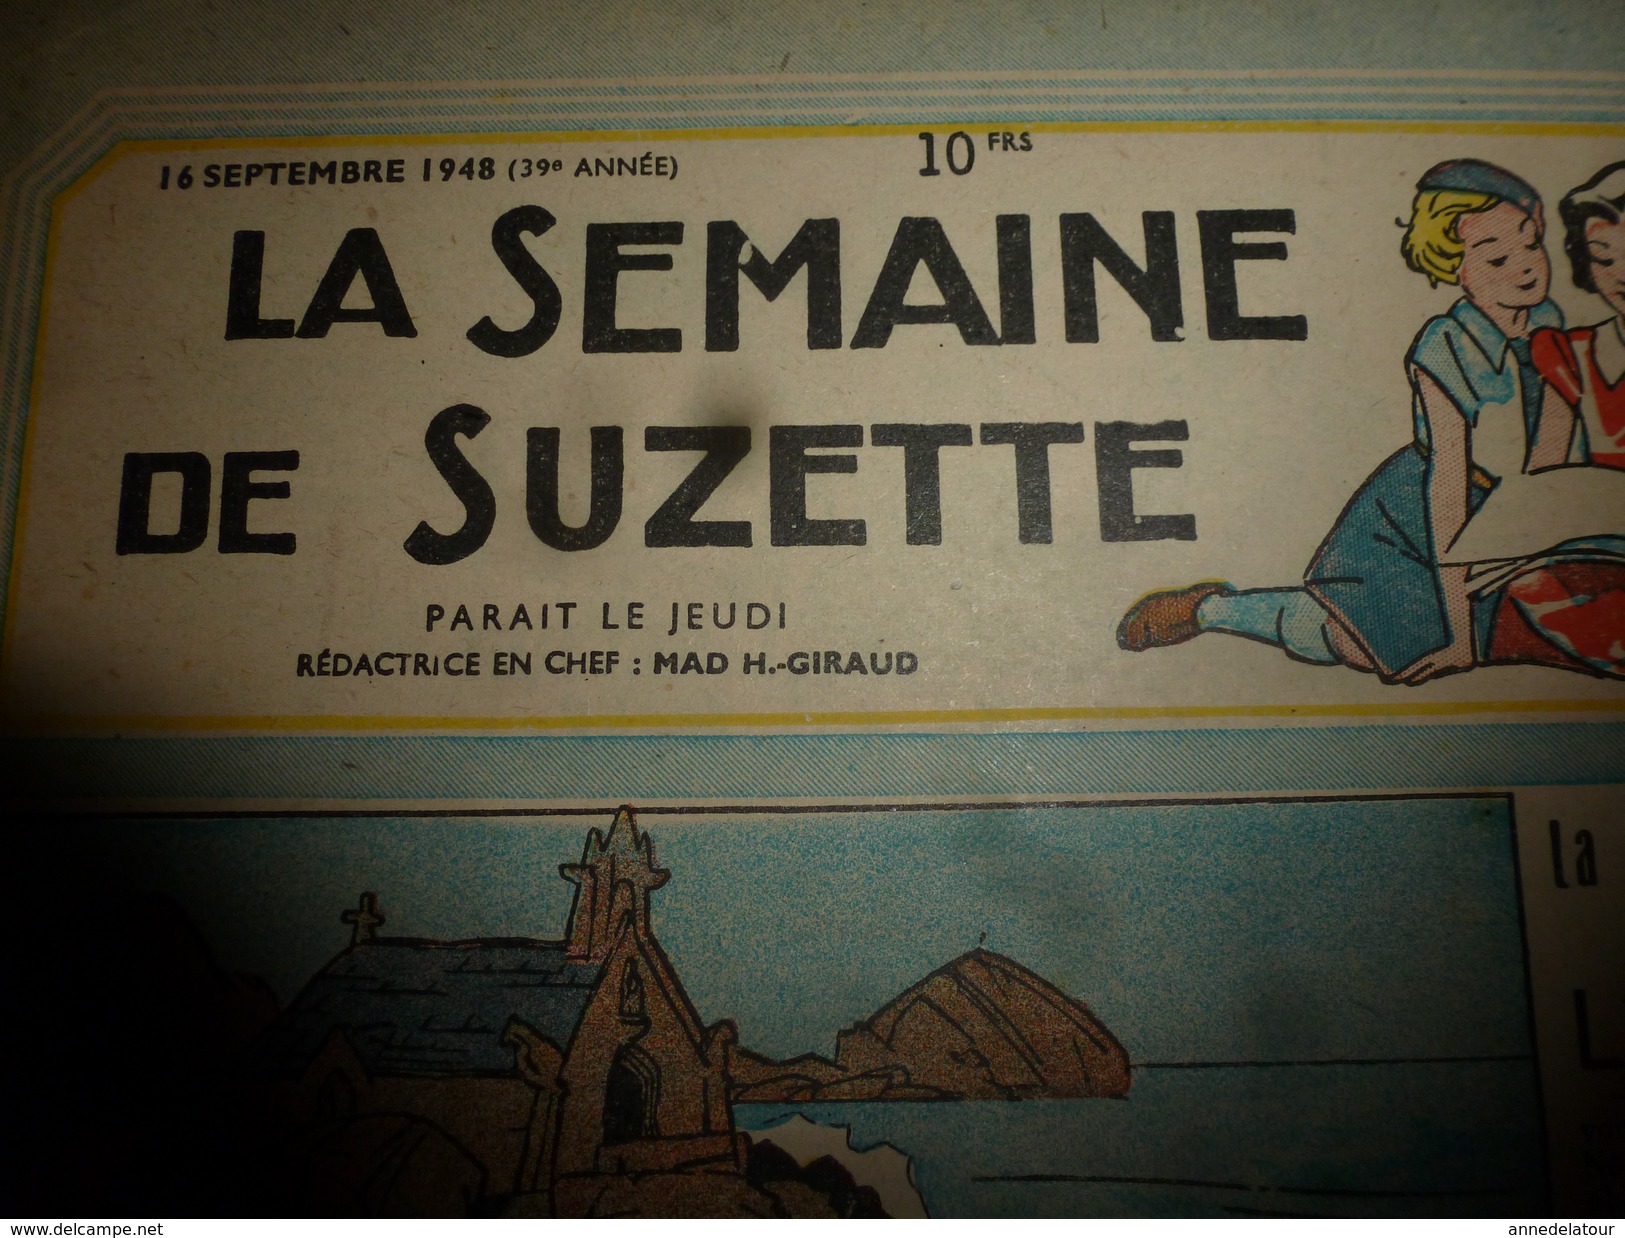 1948 LSDS: La Chapelle Marine De Notre-Dame Des Flots ;Plougarla'ch;La "Marie-Corentine" Barque Des Kervallac'h; Etc - La Semaine De Suzette